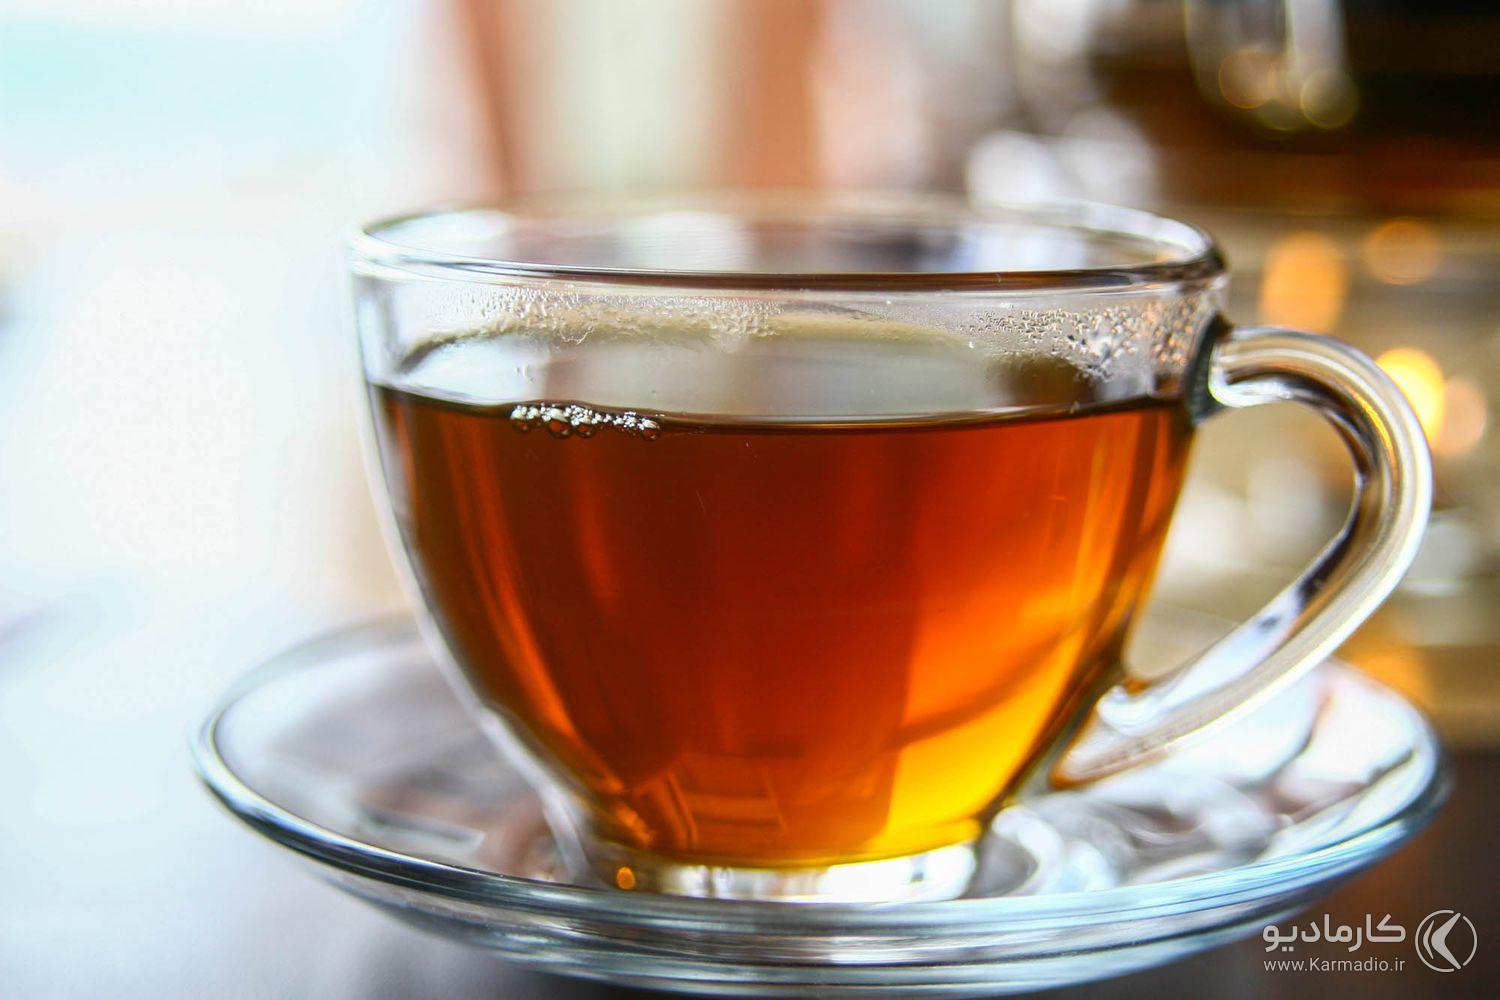 15 دسامبر، روز جهانی چای